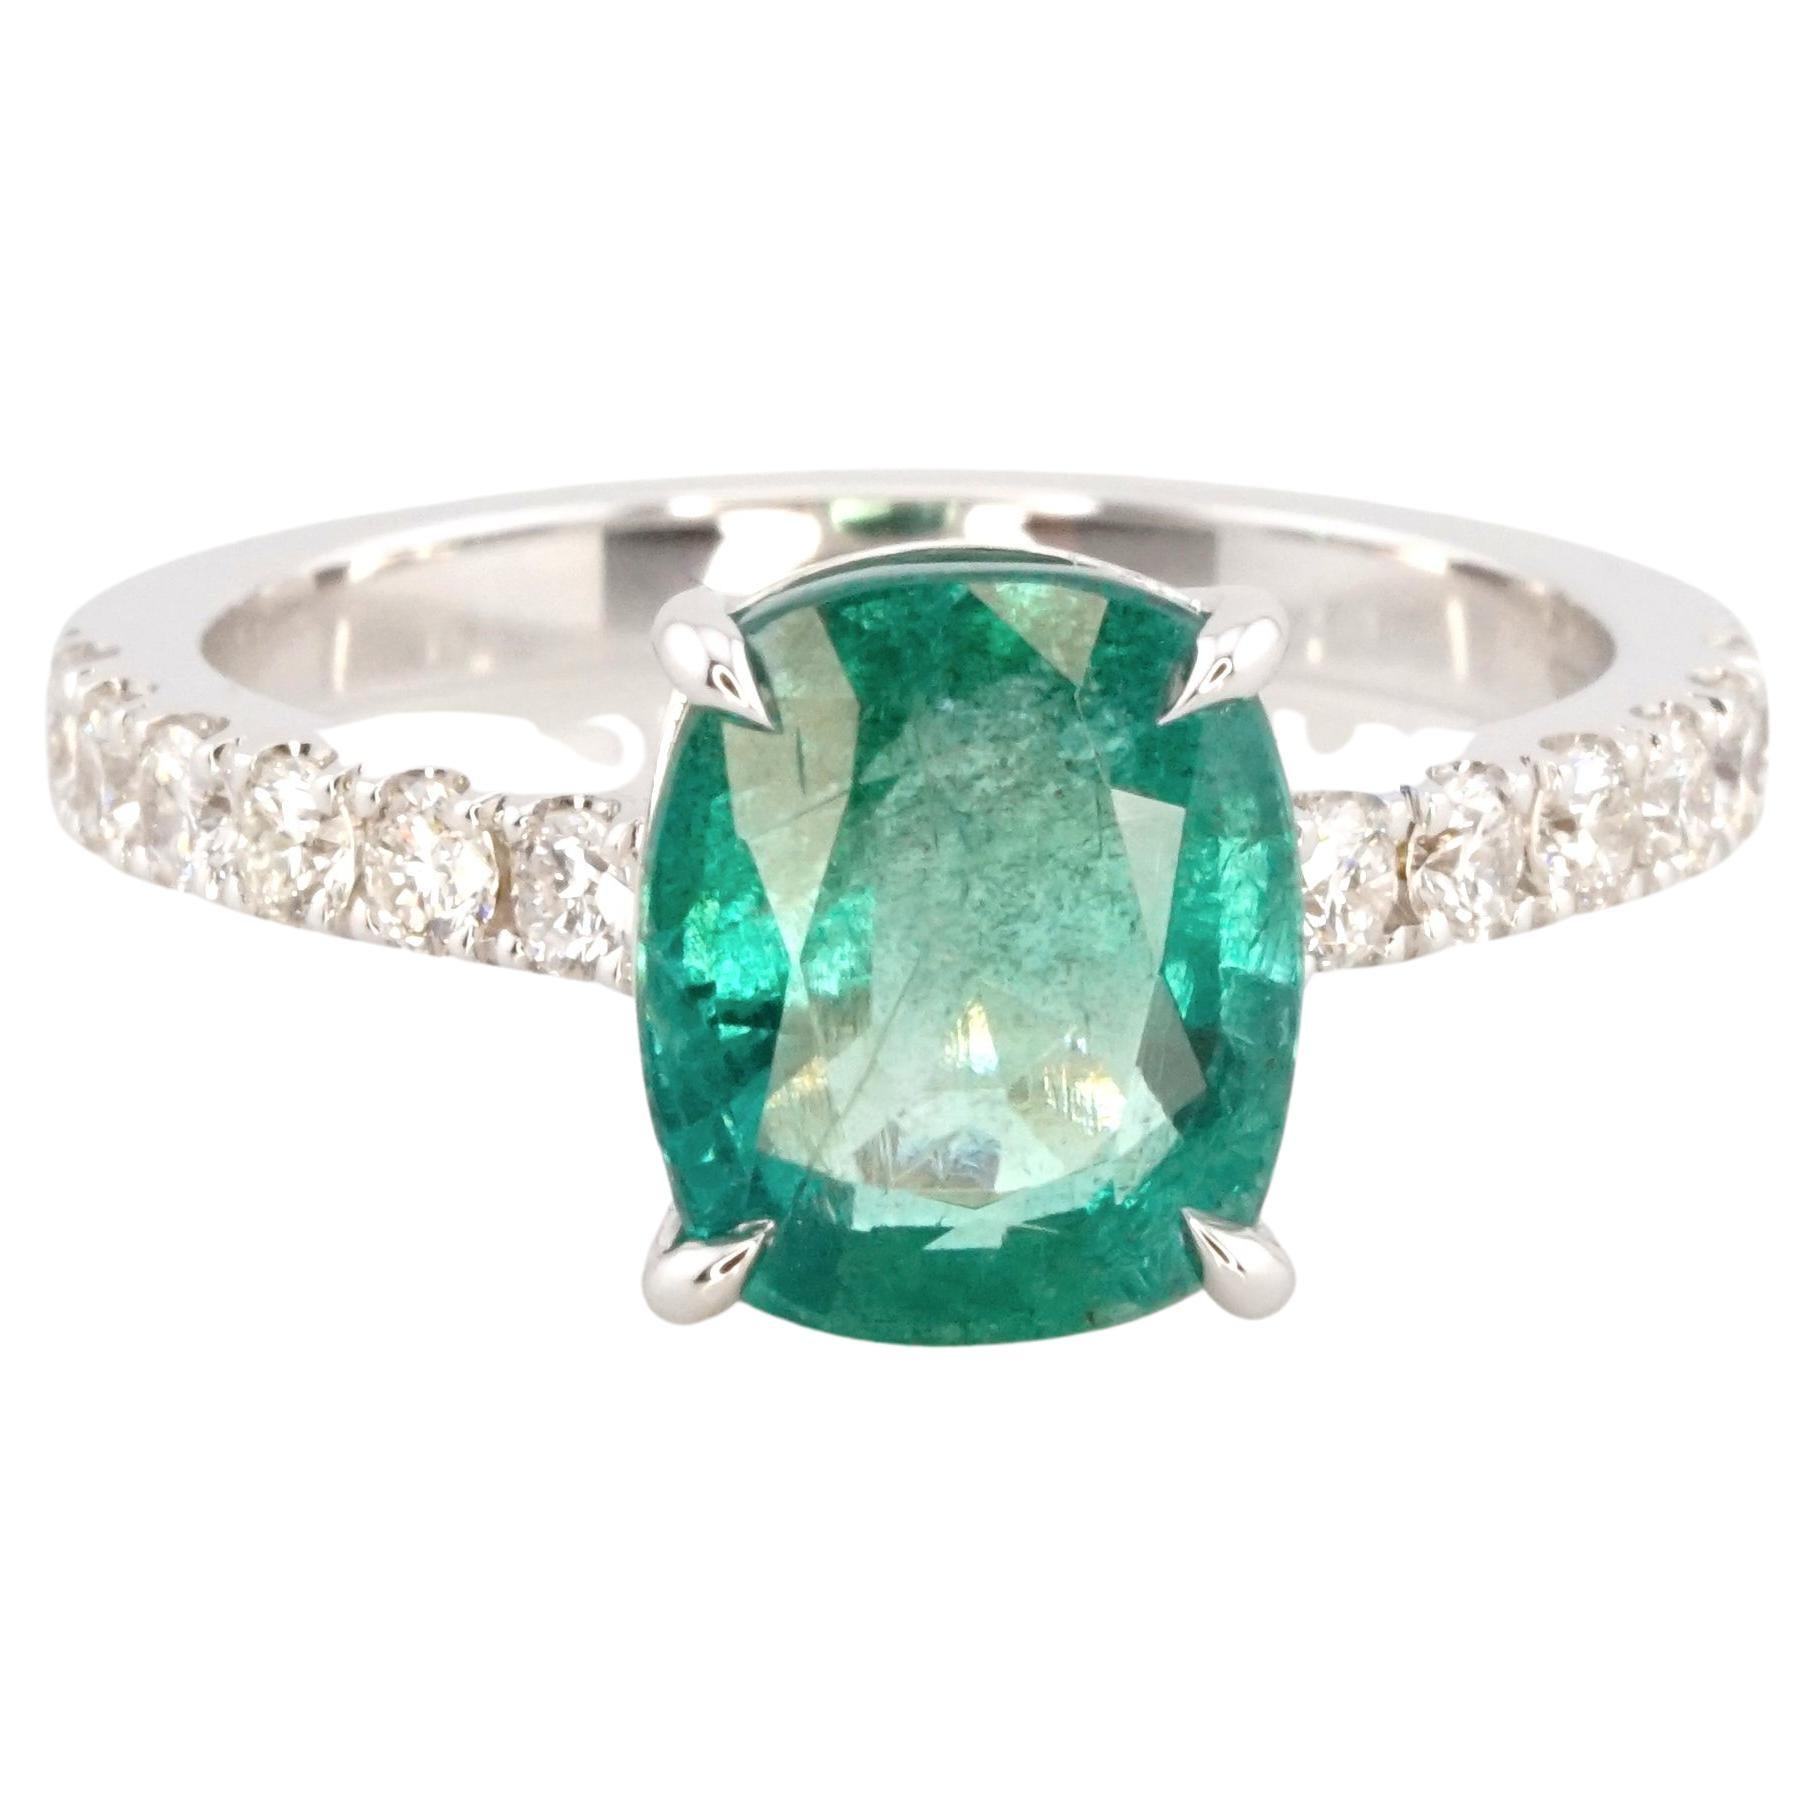 IGI-zertifizierter Ring aus 18 Karat Weißgold mit 3 Karat grünem Smaragd im Kissenschliff